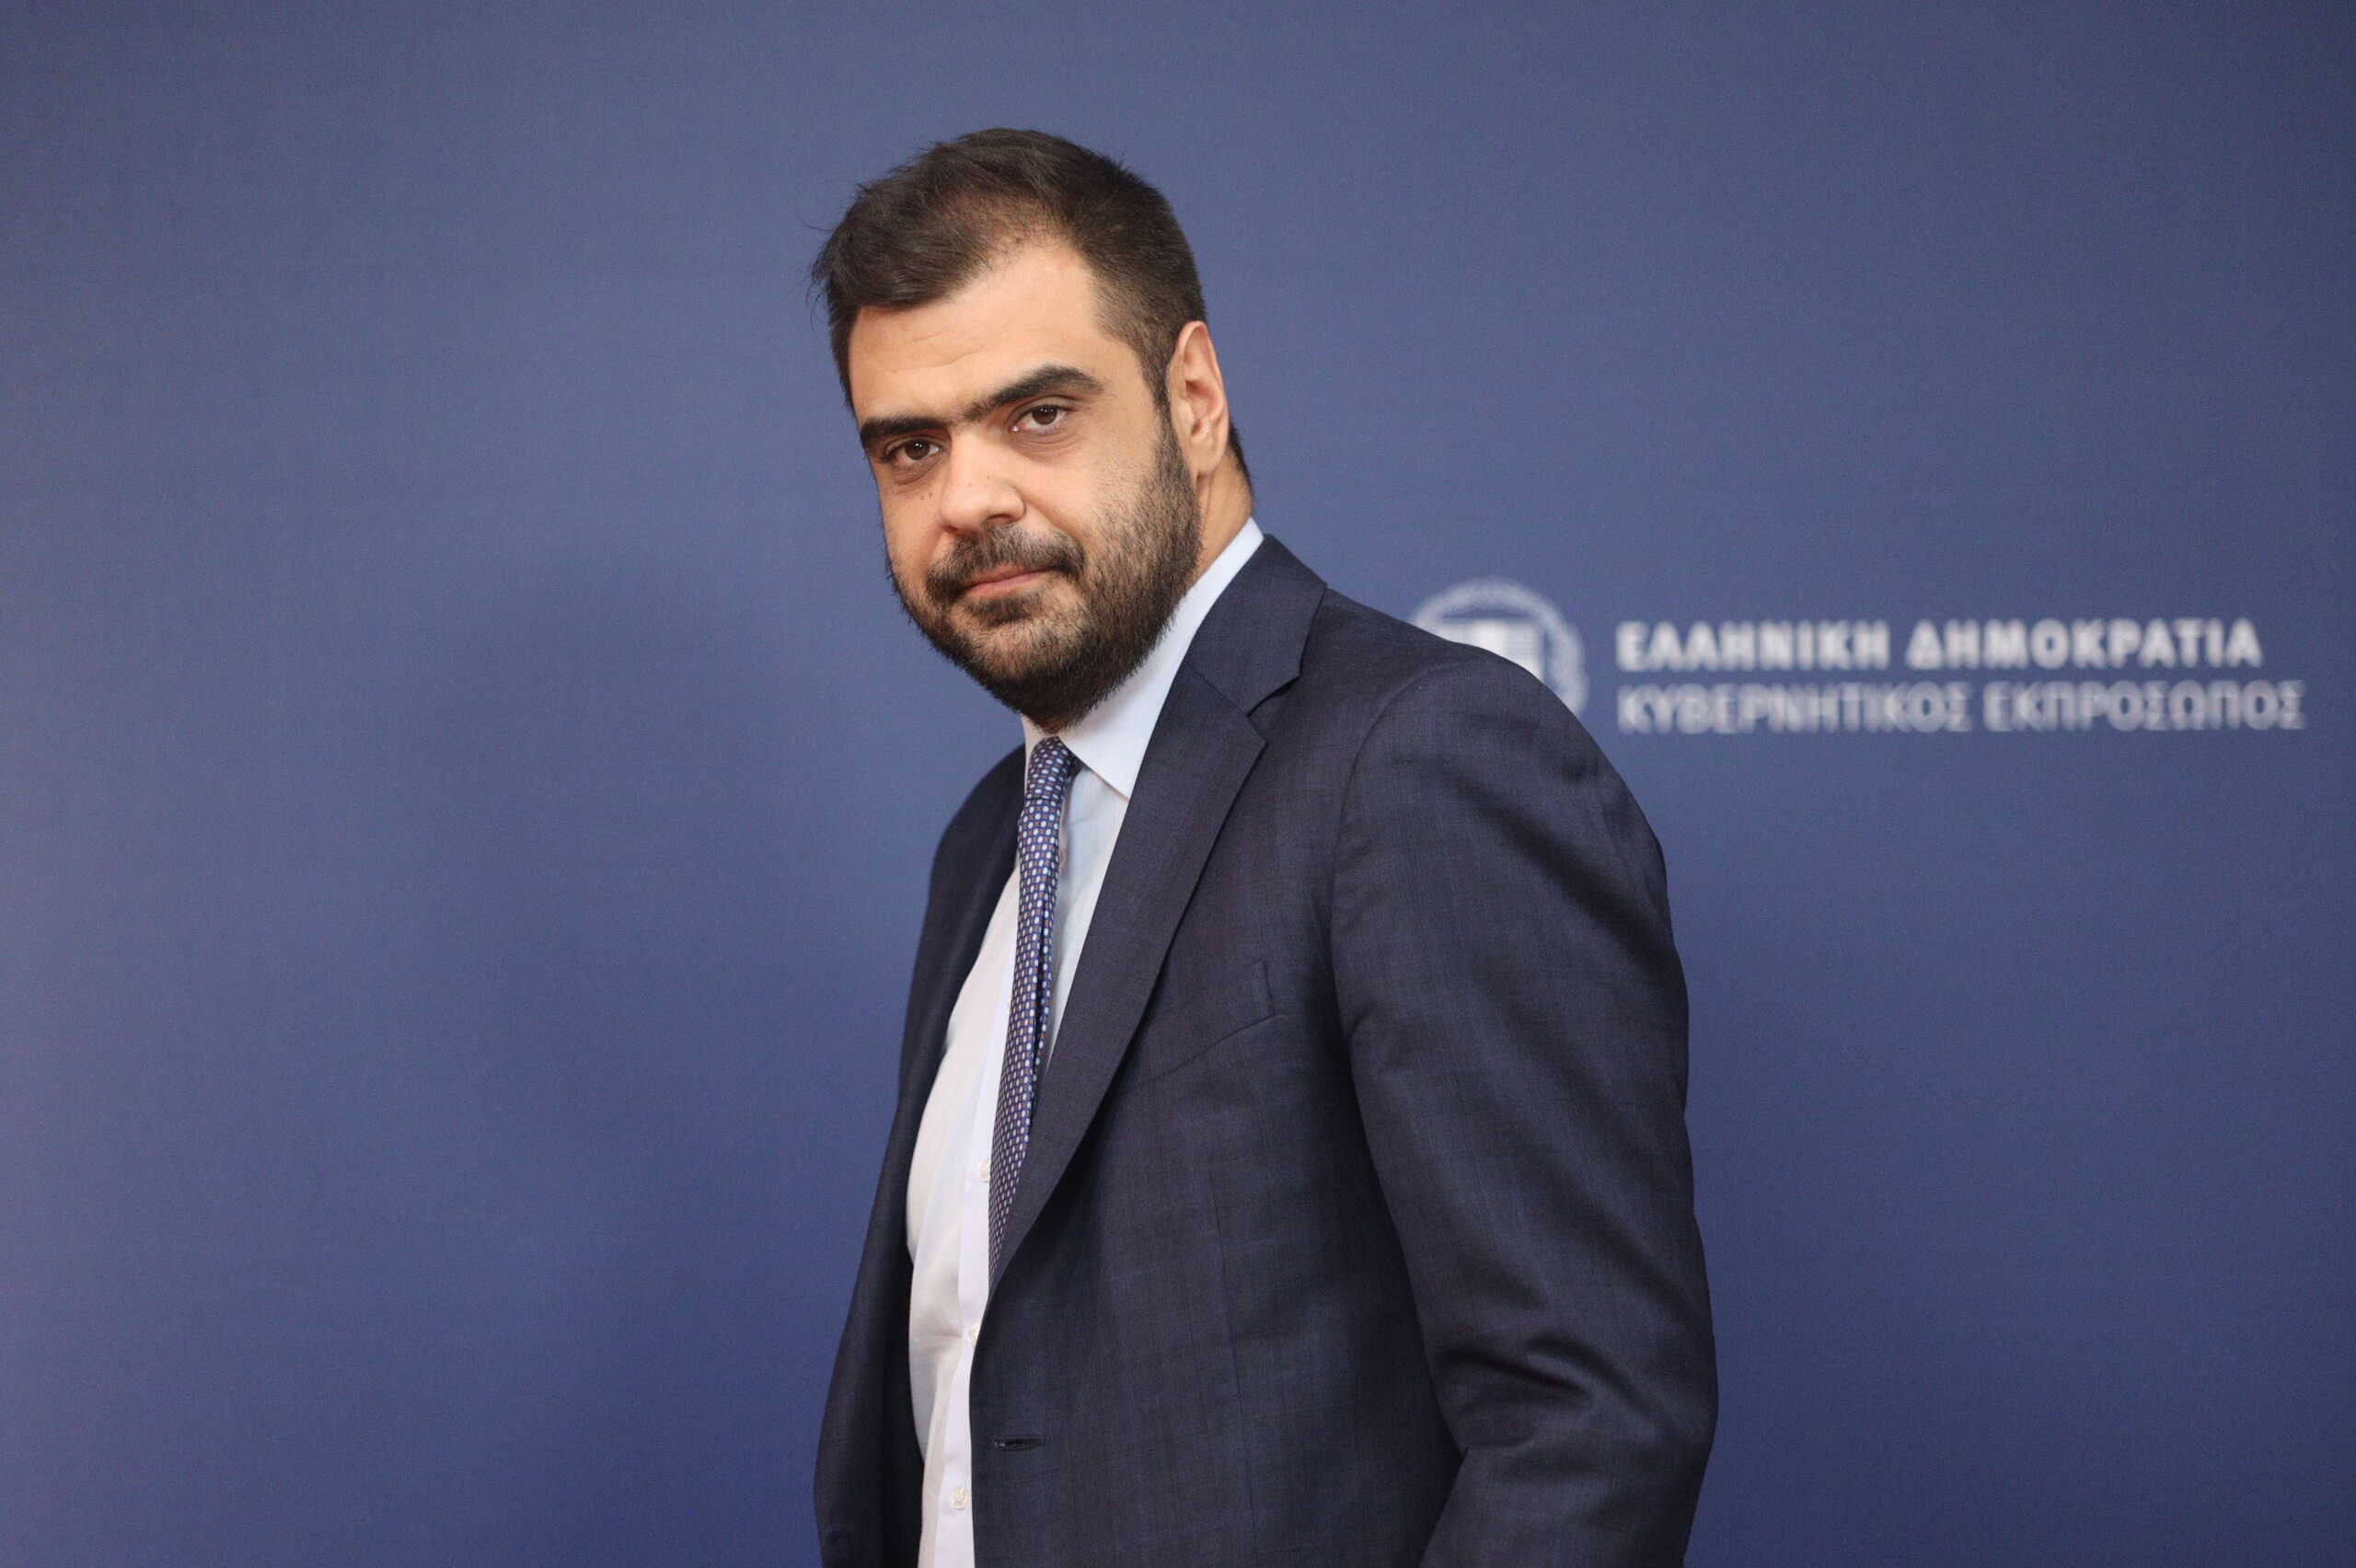 Παύλος Μαρινάκης για τις προτάσεις του ΣΥΡΙΖΑ: Από όσα λέει, τίποτα δεν είναι σωστό